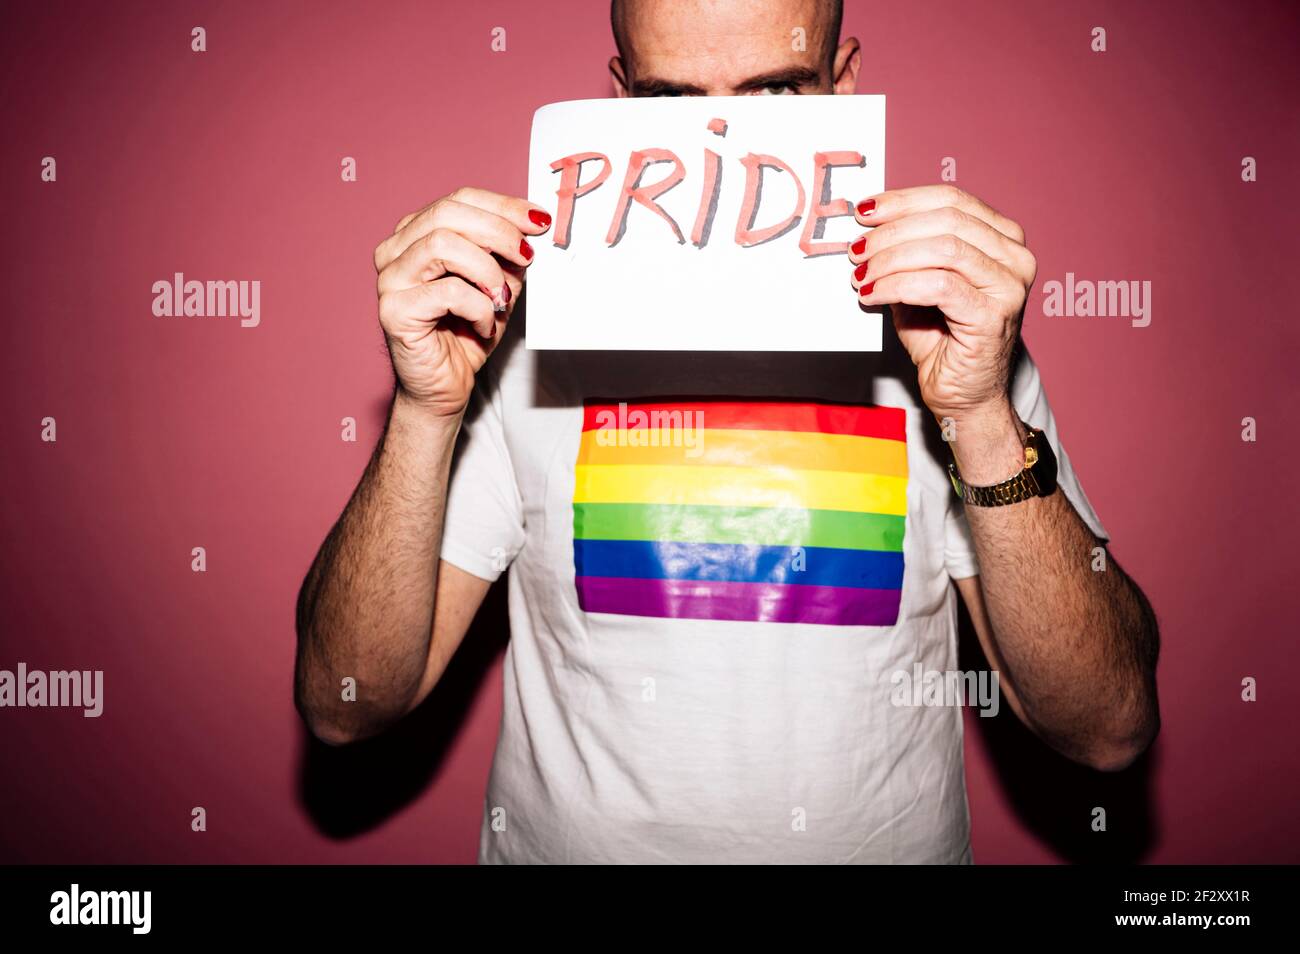 Rebellischer bärtiger homosexueller Mann mit roten Lippen und Maniküre machen Grimace beim Zeigen und Bedecken Gesicht mit Papier mit Pride Text gegen rosa BA Stockfoto